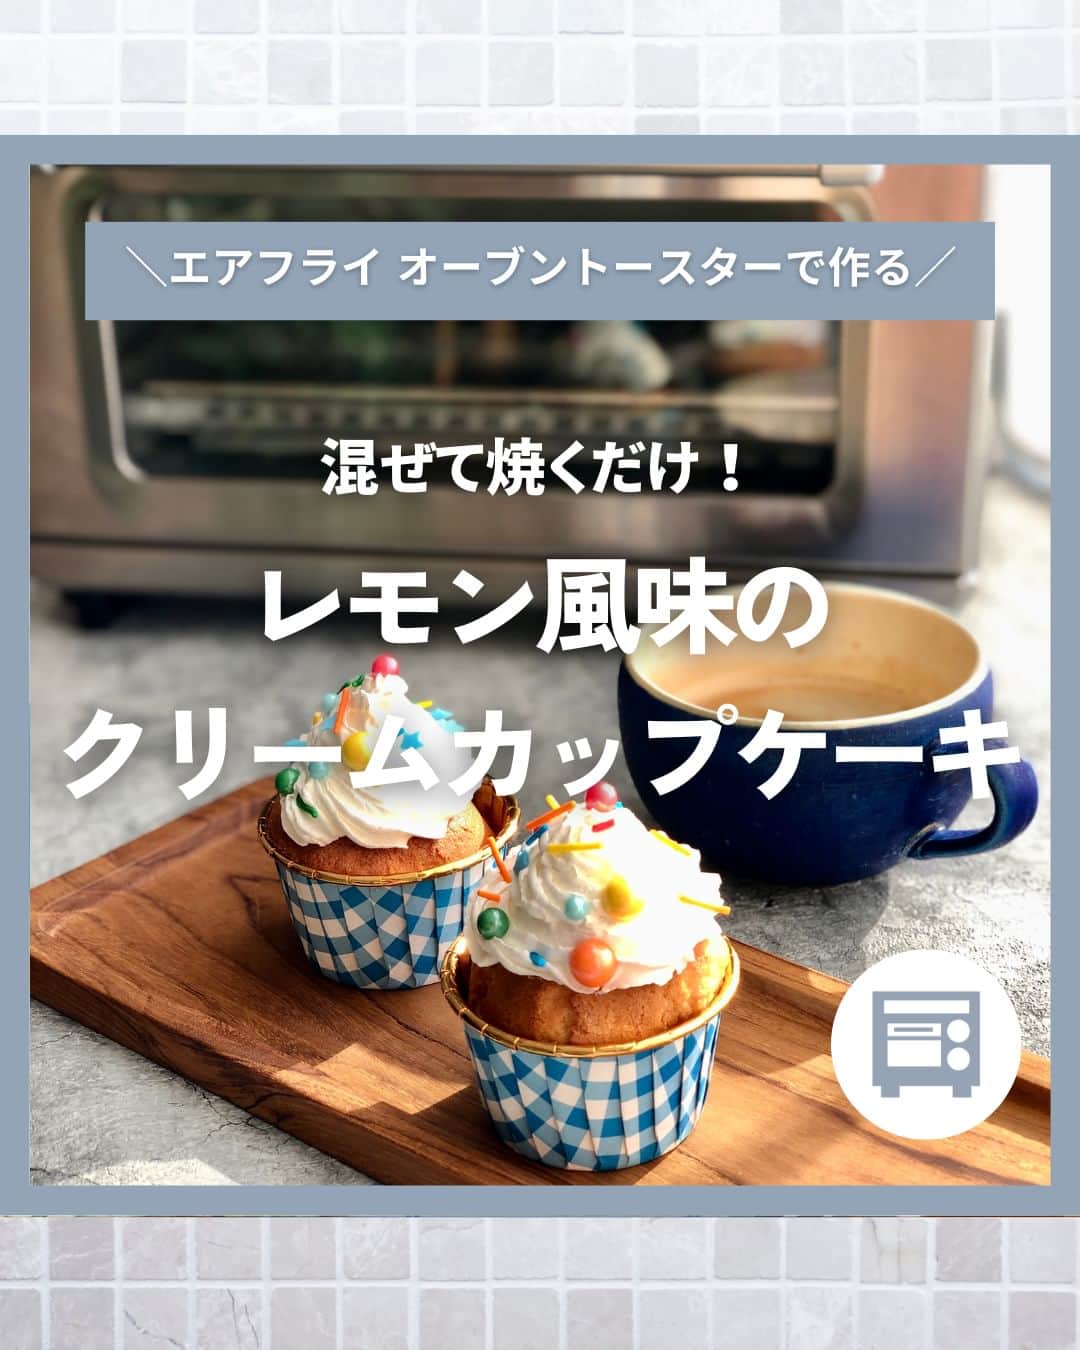 Cuisinart(クイジナート)ジャパン公式アカウントのインスタグラム：「混ぜて焼くだけ♪レモン風味のクリームカップケーキ🧁  おうち時間に、見た目も可愛いカップケーキはいかがですか？🍋  クイジナートの「エアフライ オーブントースター」は、6種類の調理モードを搭載。 ダイヤルをBAKEモードに合わせれば、熱風を使ったオーブン調理でお菓子作りもできちゃいます♪  材料を混ぜるだけのレモンの香りが爽やかな簡単カップケーキ✨ 生クリームをたっぷり乗せてかわいらしくおめかしして😍 冷蔵庫で冷やして食べるのもおすすめです。  🧁レモン風味のクリームカップケーキ 📝材料 直径7㎝カップ 4個分 薄力粉…100g ベーキングパウダー…小さじ1弱 バター…40g グラニュー糖…50g 卵…1個 牛乳…40ml レモンの皮のすりおろし…1/2個分 生クリーム…適量 アラザン…適量  📝作り方 ①バターを溶かしてボウルに入れ、グラニュー糖を加えてよく混ぜたら、卵、牛乳を加えてさらによく混ぜる。  ②薄力粉とベーキングパウダーをふるいにかけたら、①に3回に分けて加え、全体が滑らかになるように混ぜ、レモンの皮のすりおろしを加えて全体をさっくりと混ぜる。  ③カップに流し入れ、エアフライオーブントースター「BAKE」モードで180℃で15分～18分焼く。  ④③の粗熱が取れたら、生クリームを絞り、アラザンを飾る。  ・。・。・。・。・。・⁣ 🧁Item：エアフライ オーブントースター  🔍TOA38SJ(シルバー） TOA-38WJ（ホワイト）⁣ ・。・。・。・。・。・⁣  ーーーーー クイジナート公式HPでは、毎日の料理が楽しくなる様々な製品情報やレシピを公開中♪ 詳しくはプロフィールのリンクから！ ▶️@cuisine_art ーーーーー  #Cuisinart #クイジナート #クイジナートのある生活 #クイジナートLOVE #時短調理 #時短家電 #キッチン家電 #おうちごはん #おうち時間を楽しむ #丁寧な暮らし #豊かな食卓 #美味しい時間 #料理好きな人と繋がりたい #クイジナートエアフライオーブントースター #クイジナートノンフライオーブントースター #オーブントースター #トースターレシピ #カップケーキ #カップケーキレシピ #かんたんお菓子  #簡単おやつレシピ #時短レシピ #おやつレシピ #おうちスイーツ #レモンケーキ #クリームケーキ #おうちカフェ #お菓子作り #お菓子作り好きな人と繋がりたい #冷たいスイーツ」